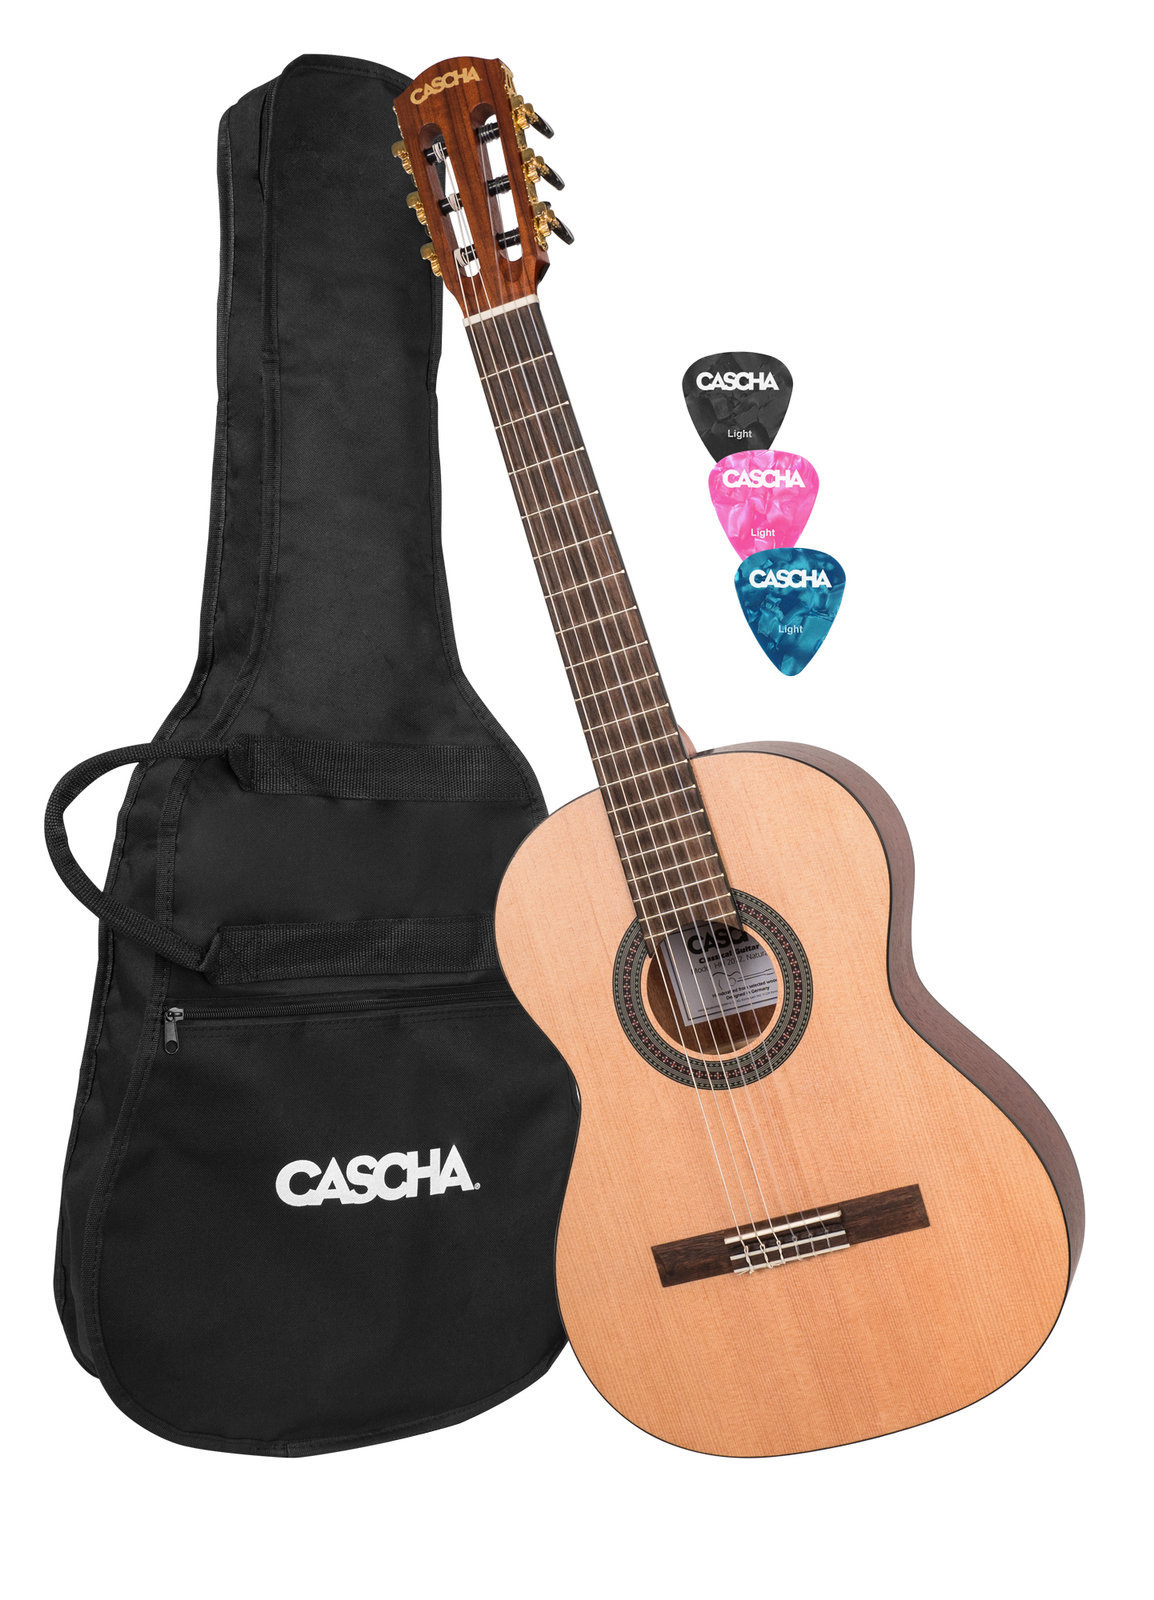 Guitare classique taile 3/4 pour enfant Cascha HH 2079 3/4 Natural